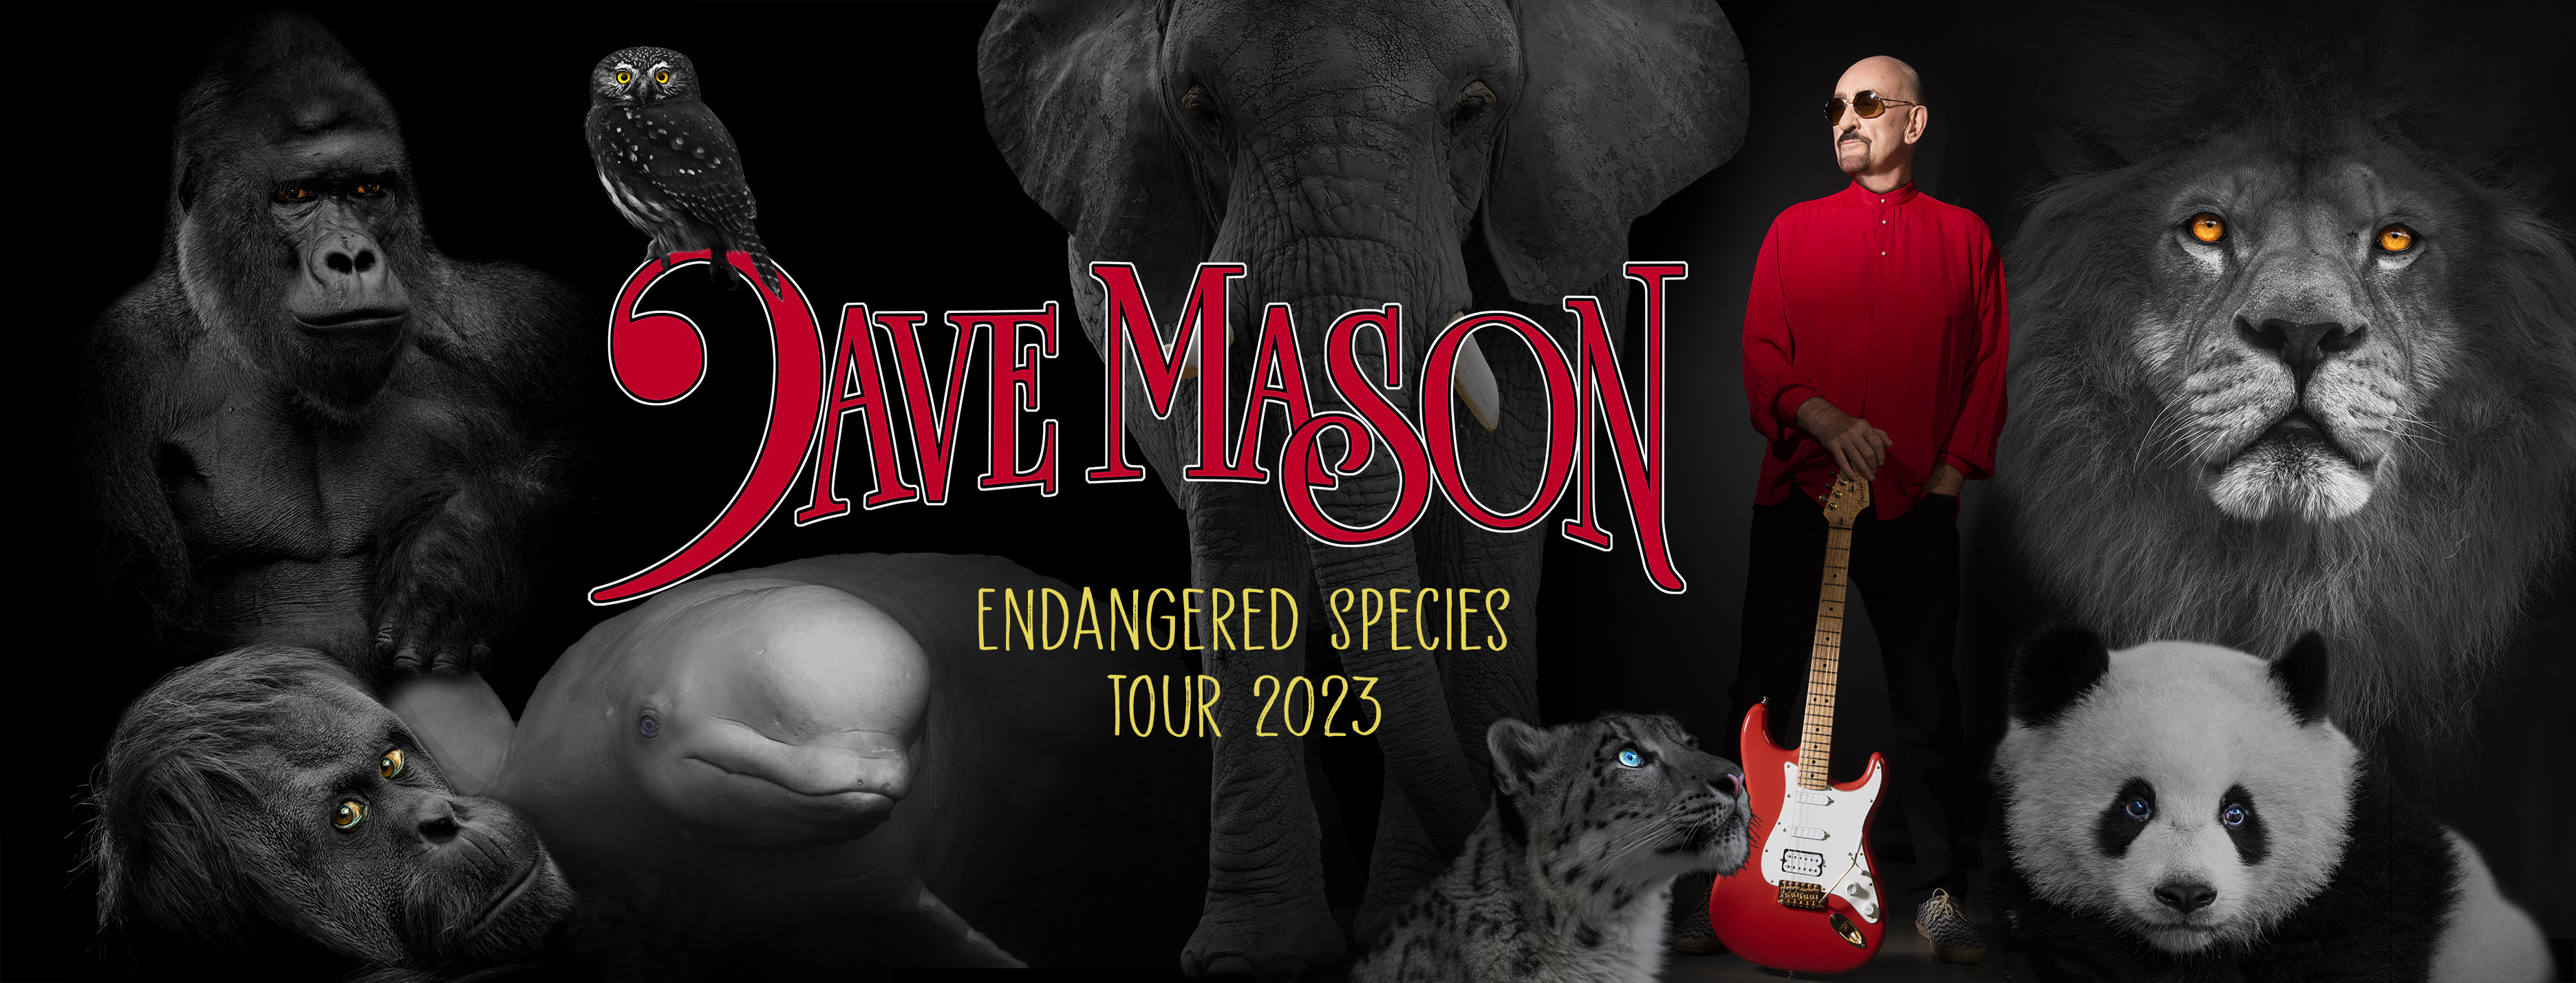 DAVE MASON Announces 2023 "ENDANGERED SPECIES TOUR"